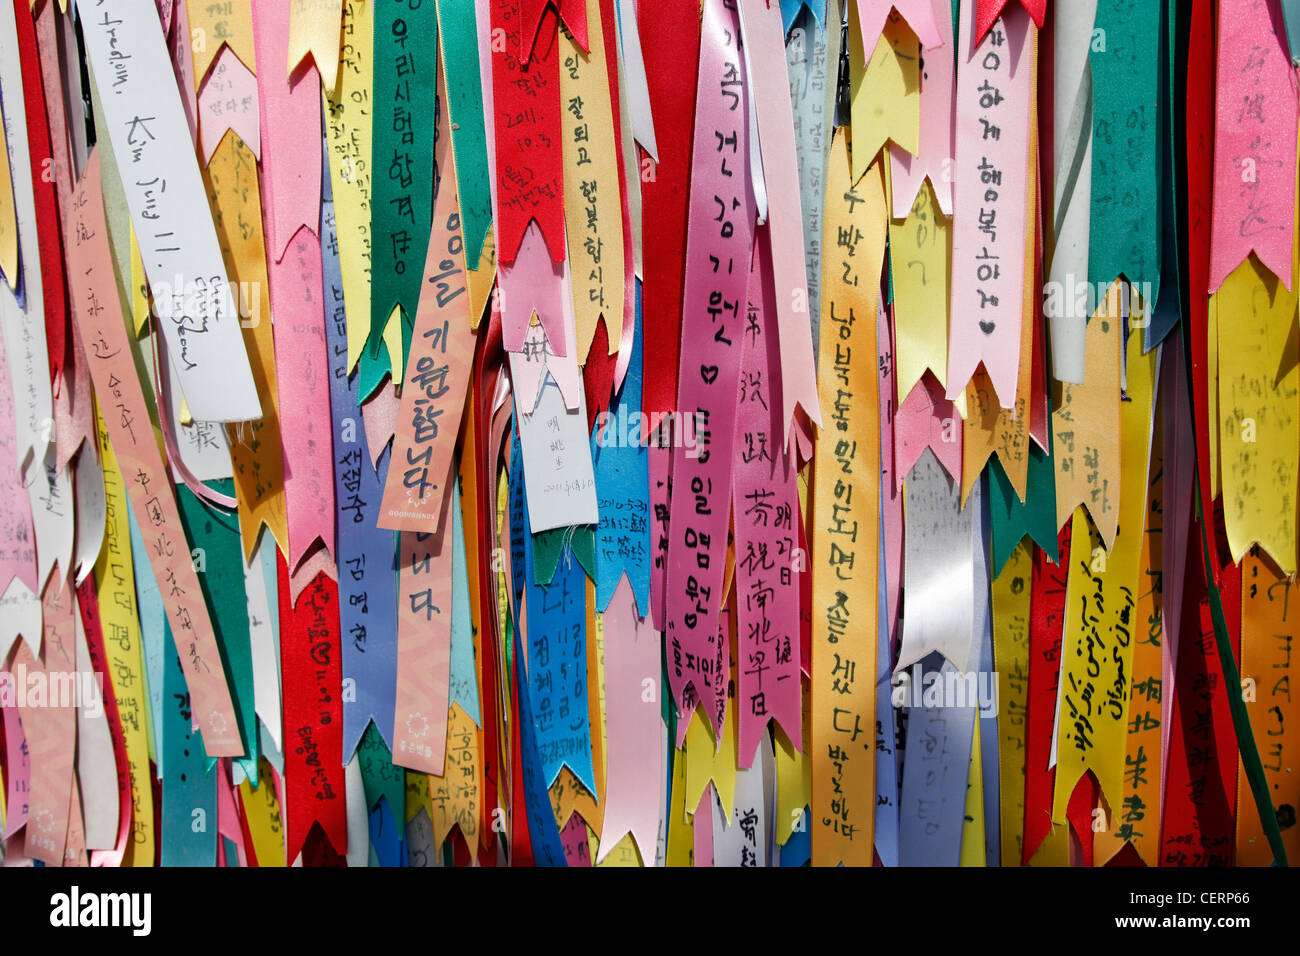 Des rubans qui souhaitent pour souhaiter la paix et l'unité à la DMZ, zone démilitarisé sur la frontière nord-coréenne du Sud, Imjingak, Corée du Sud Banque D'Images